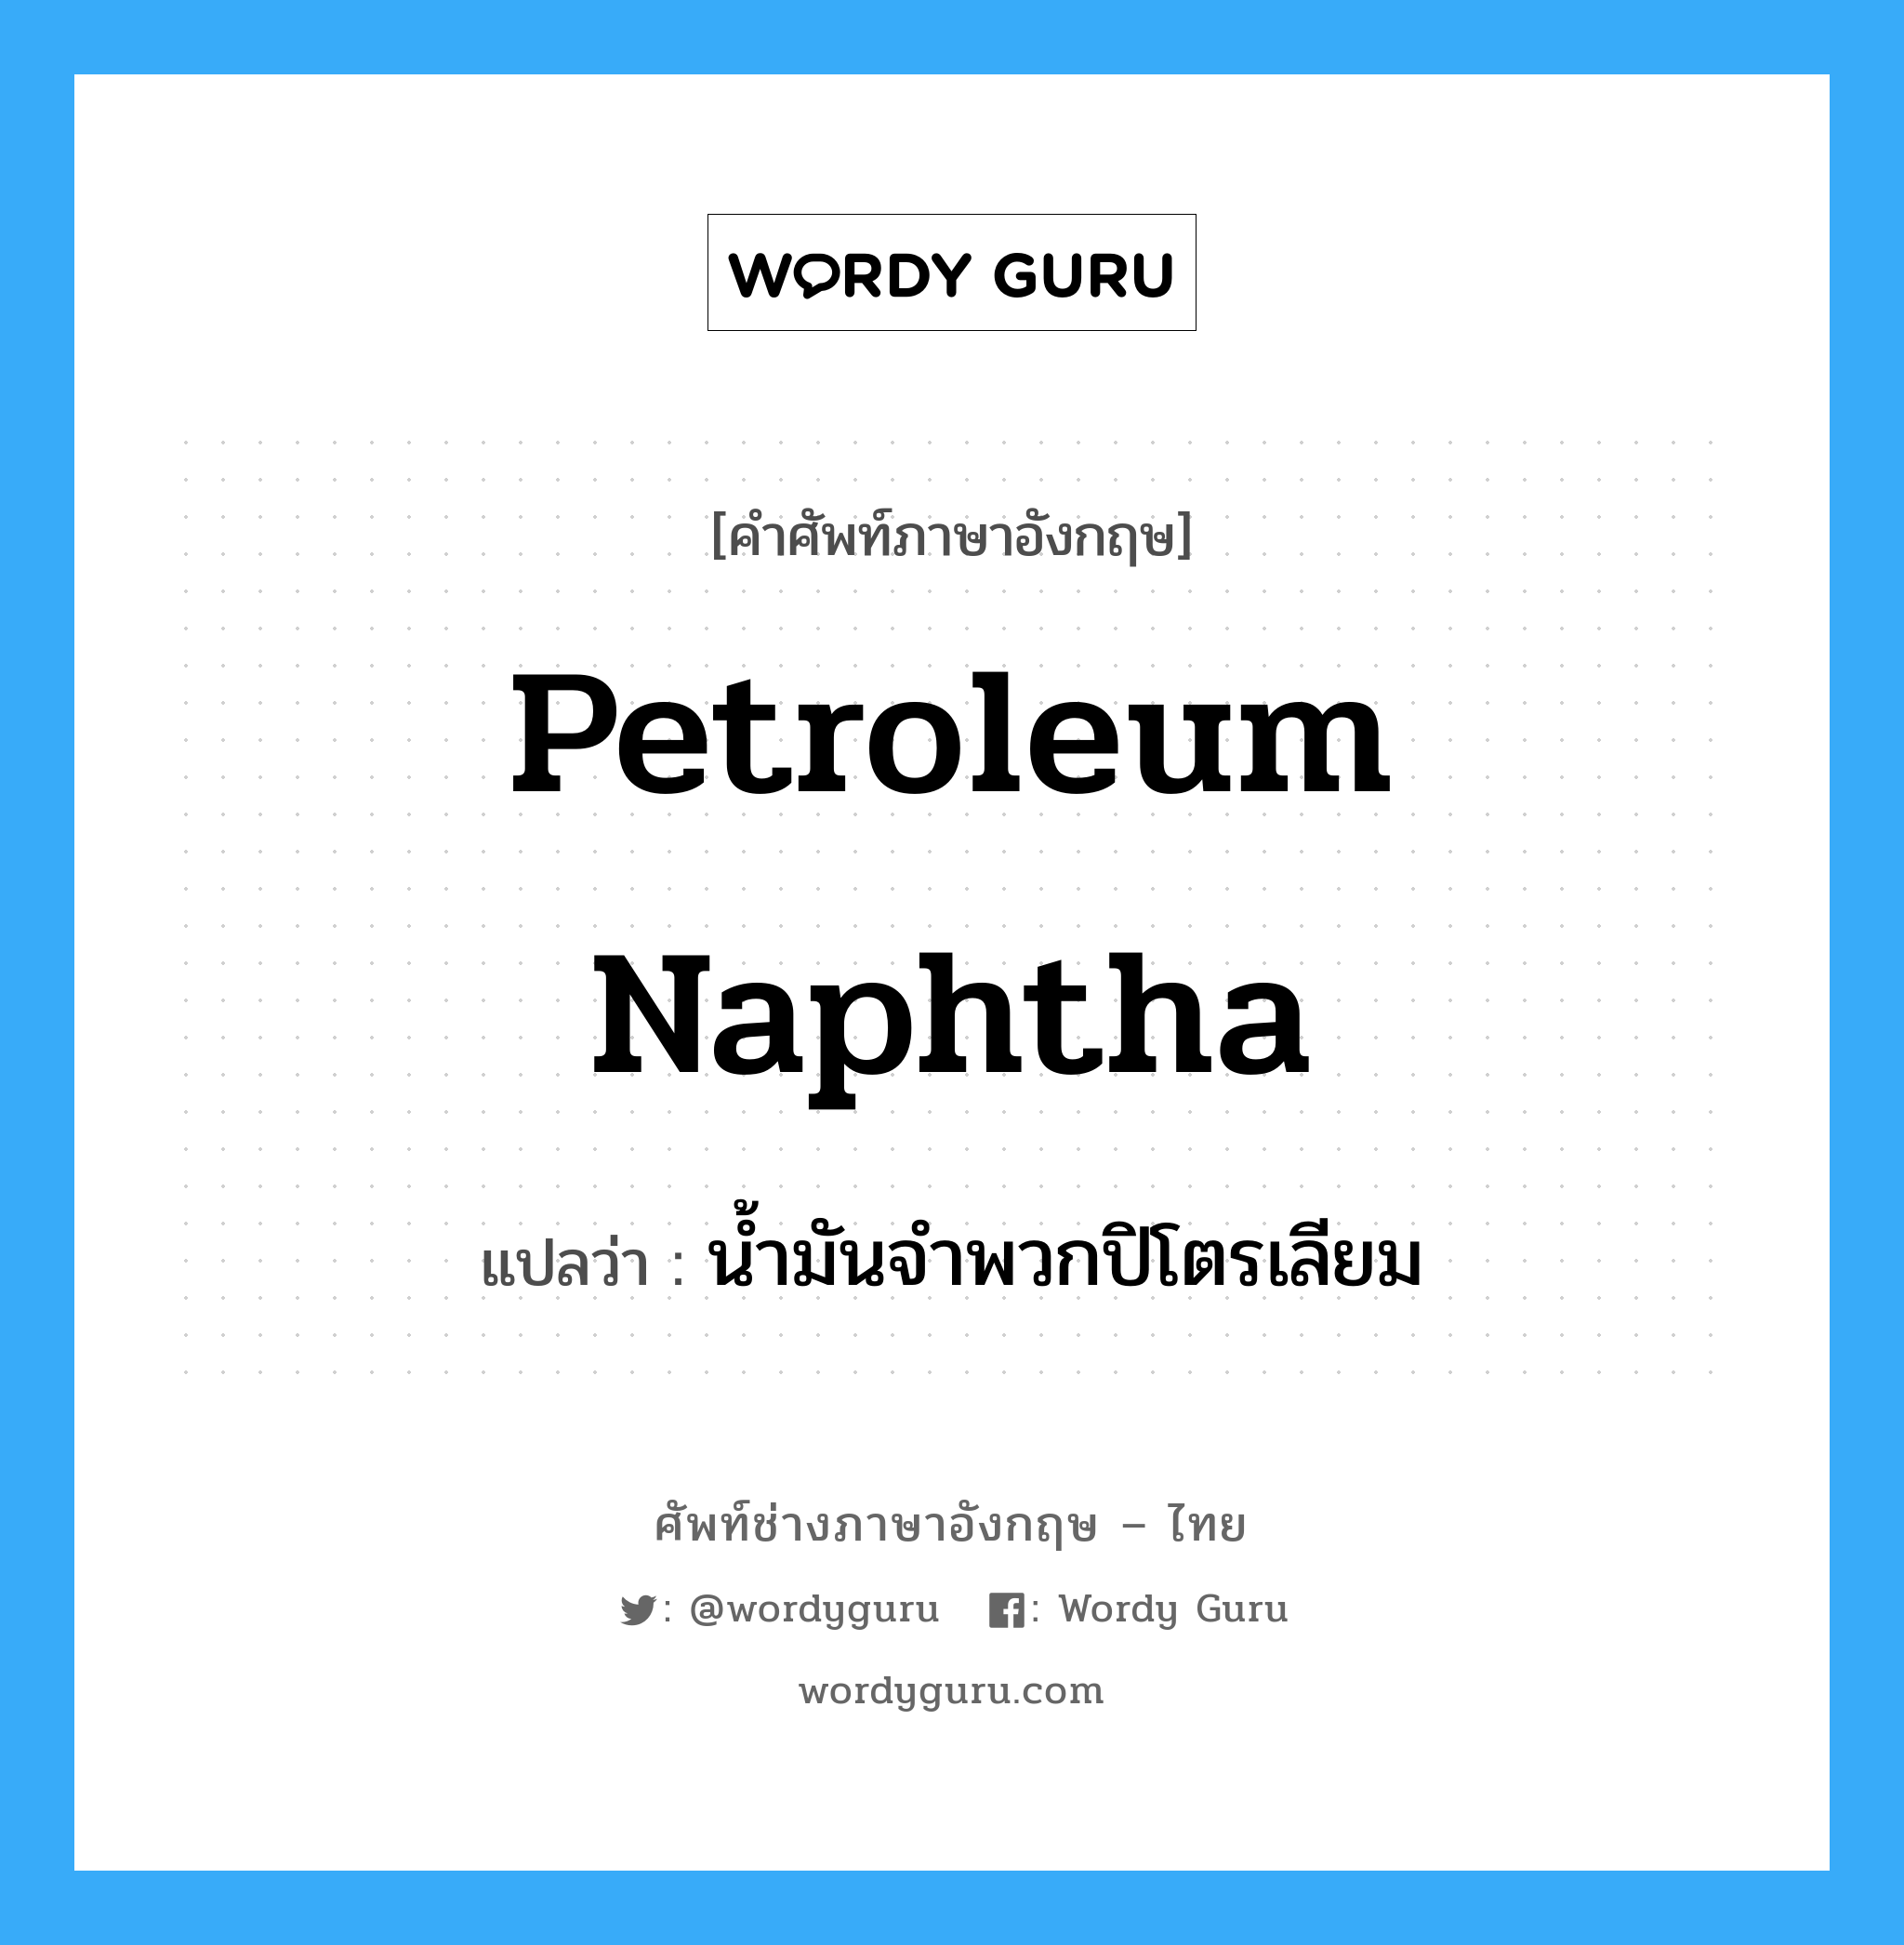 petroleum naphtha แปลว่า?, คำศัพท์ช่างภาษาอังกฤษ - ไทย petroleum naphtha คำศัพท์ภาษาอังกฤษ petroleum naphtha แปลว่า น้ำมันจำพวกปิโตรเลียม